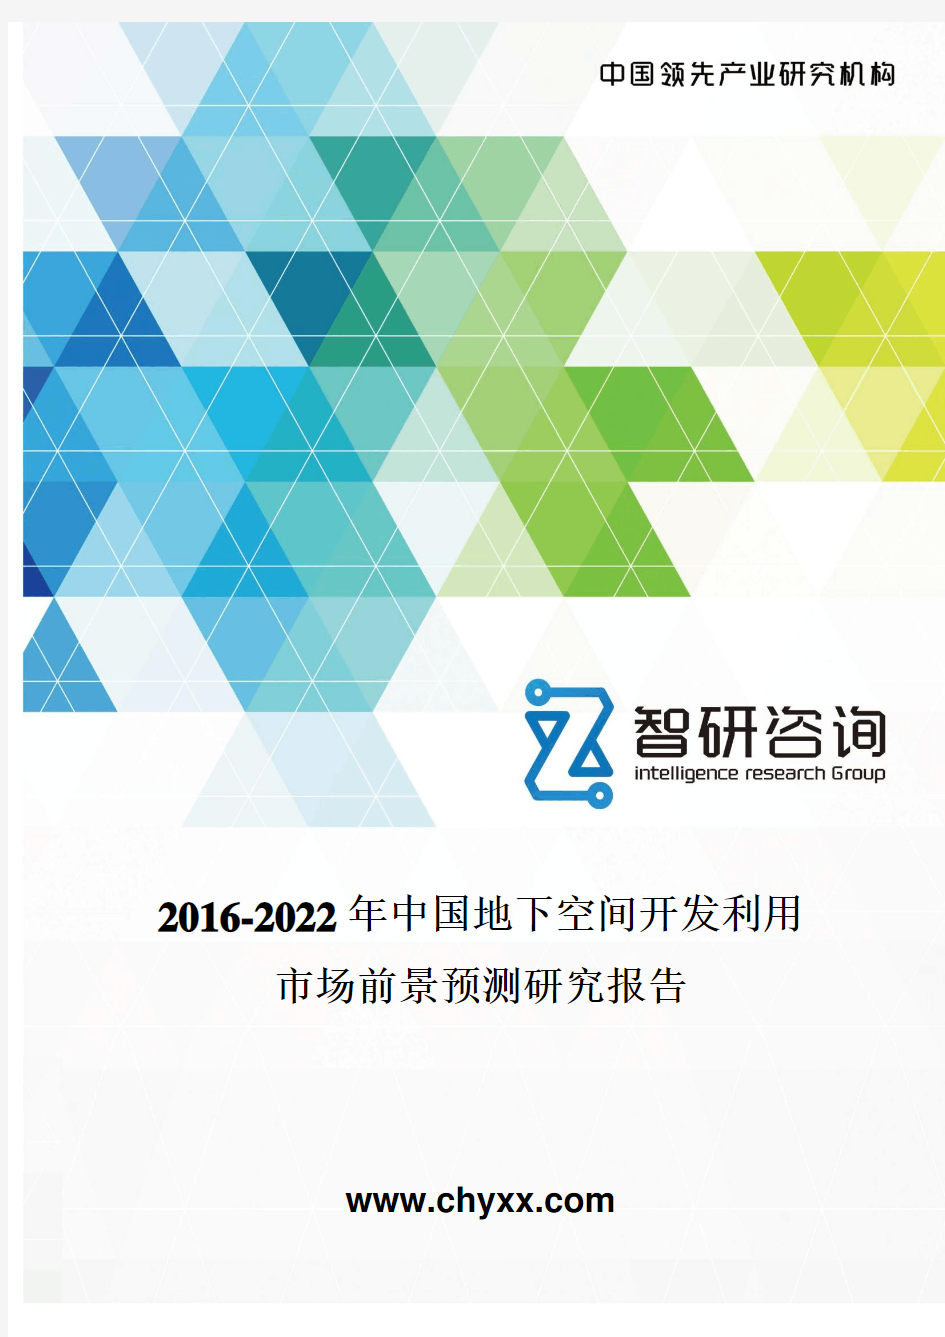 2016-2022年中国地下空间开发利用市场前景预测研究报告